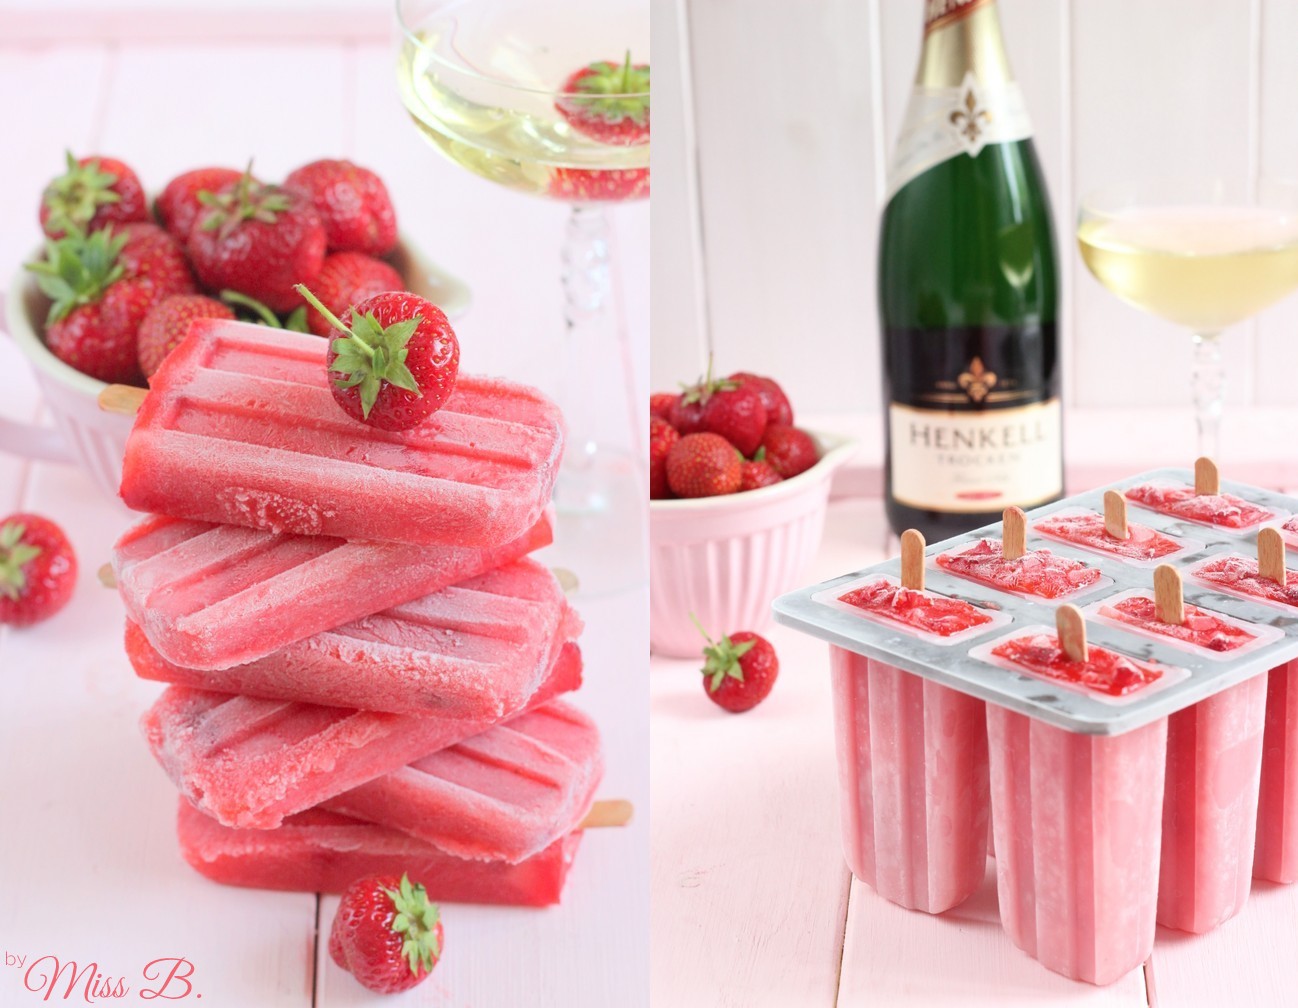 Eis am Stiel: Erdbeer-Sekt-Popsicles [mit Henkell]